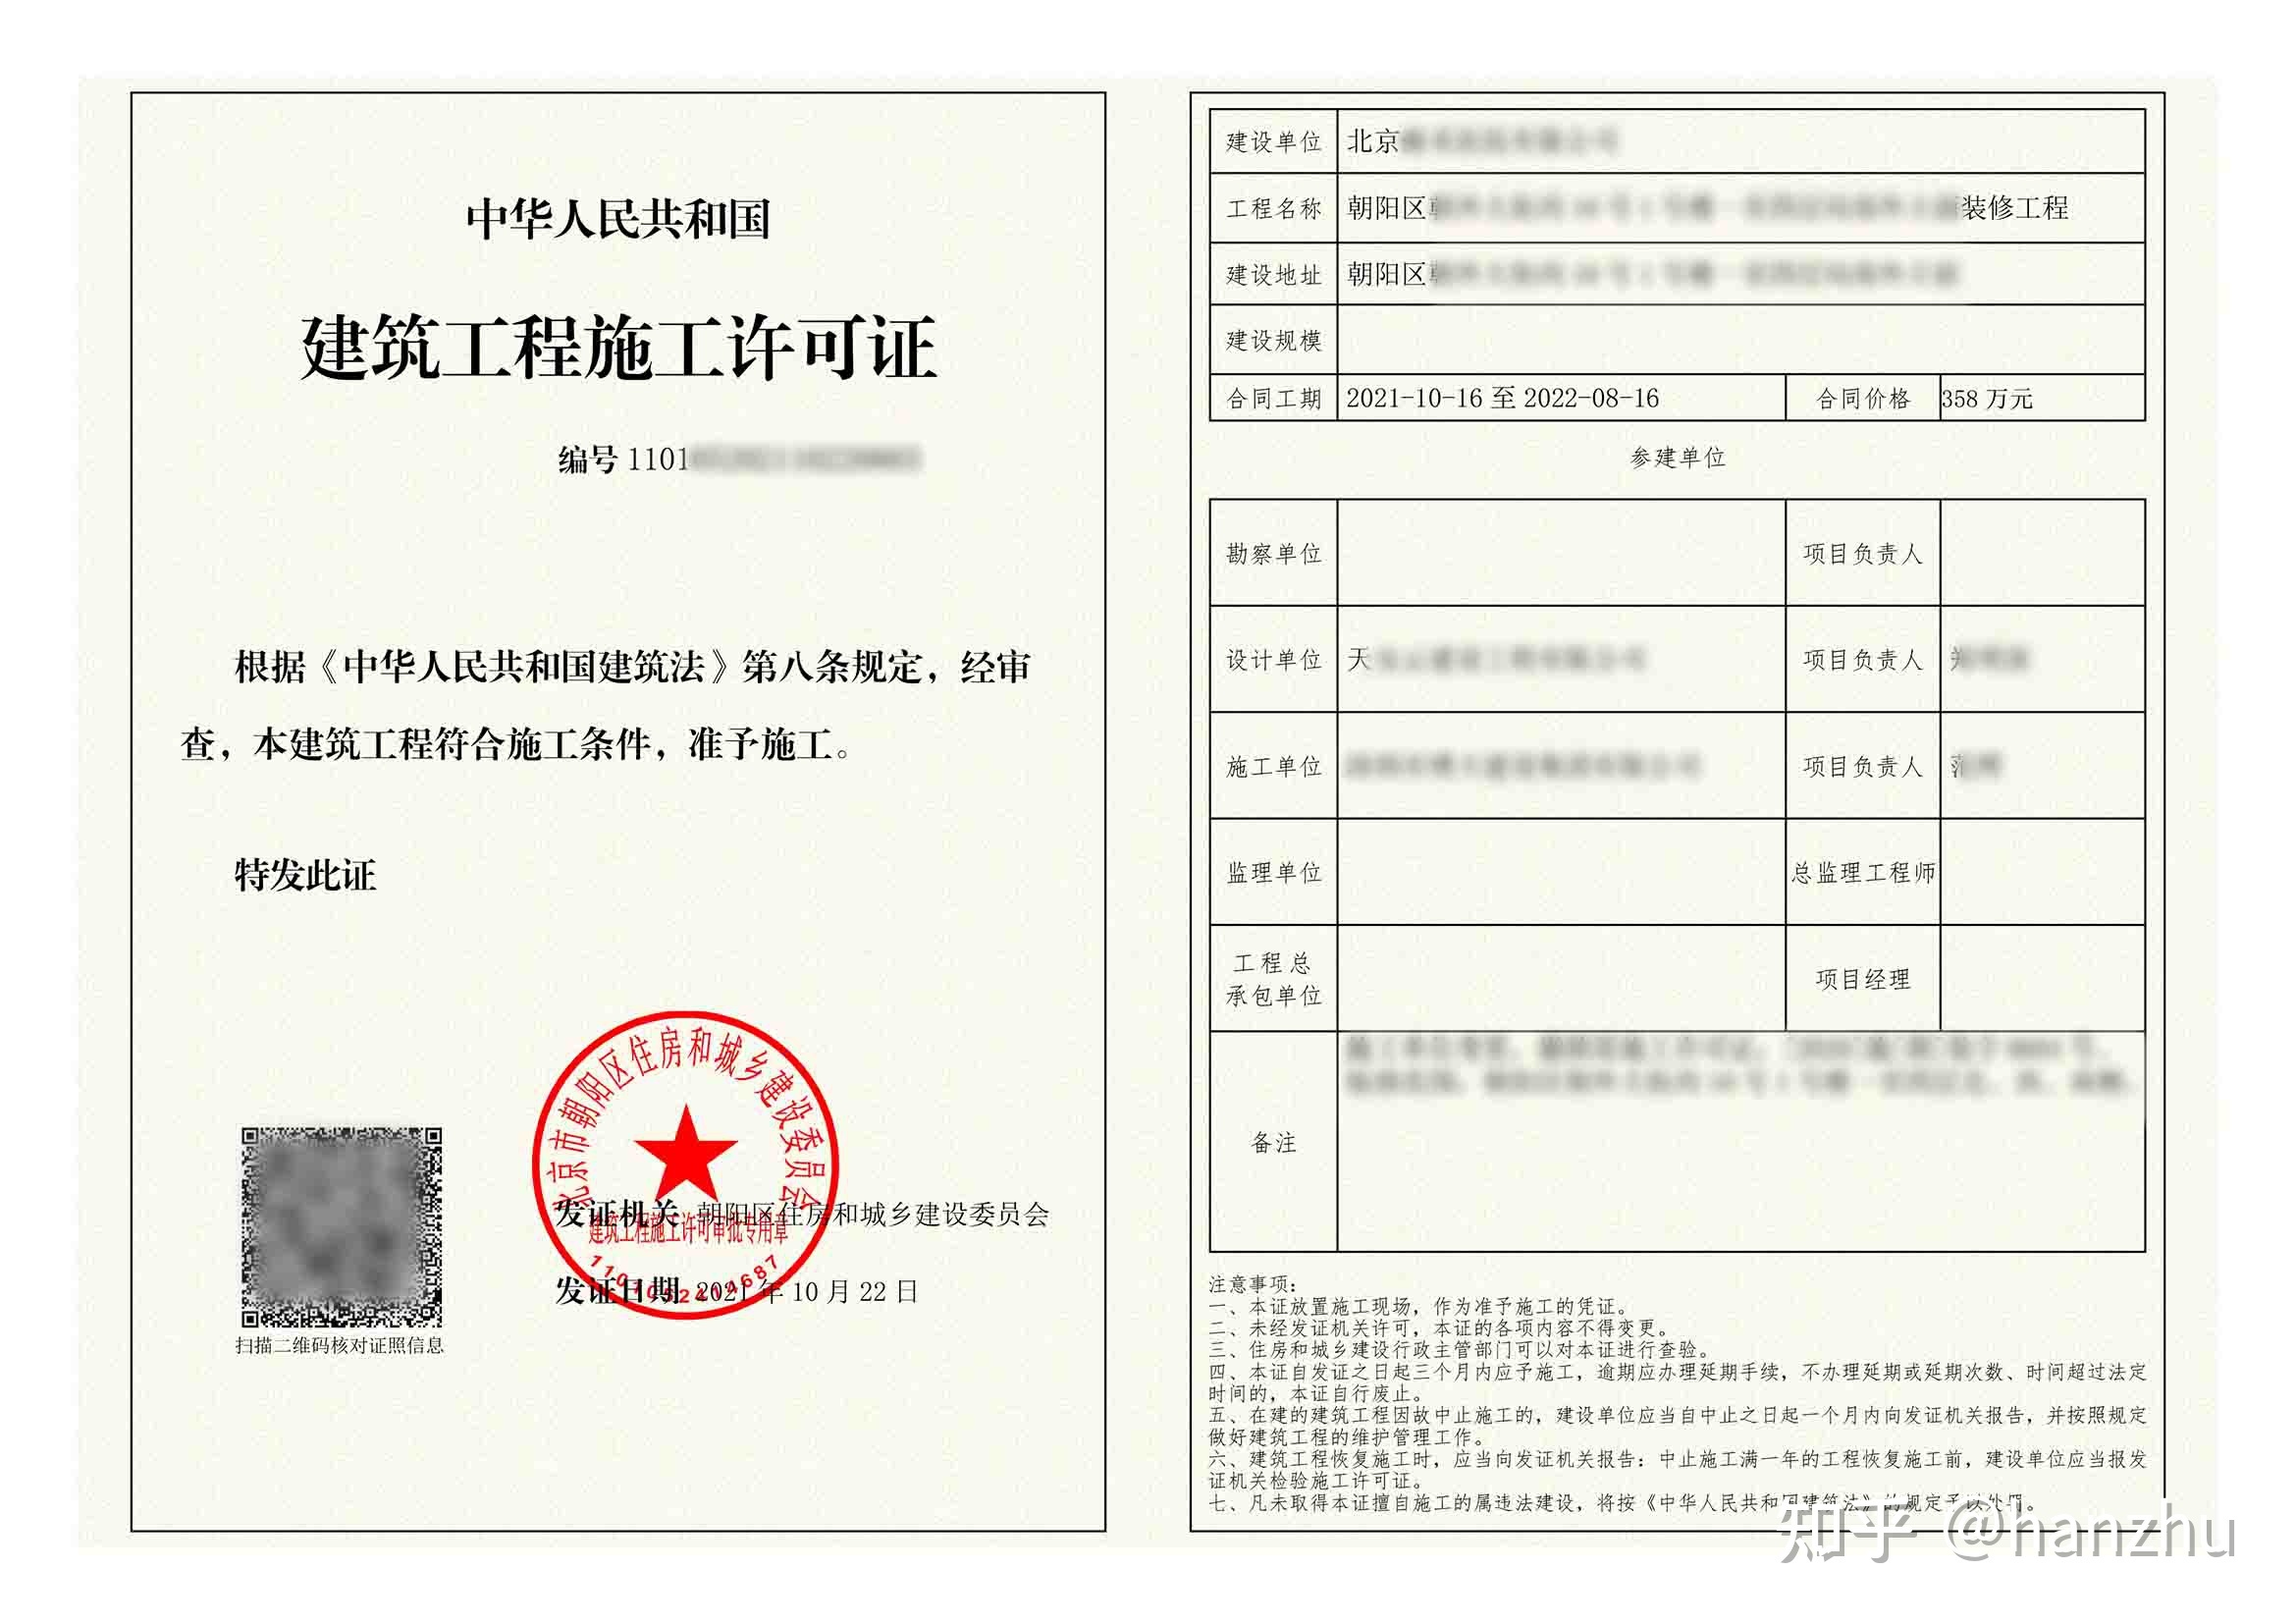 在北京办理装修施工许可证需要提交什么资料及文件?